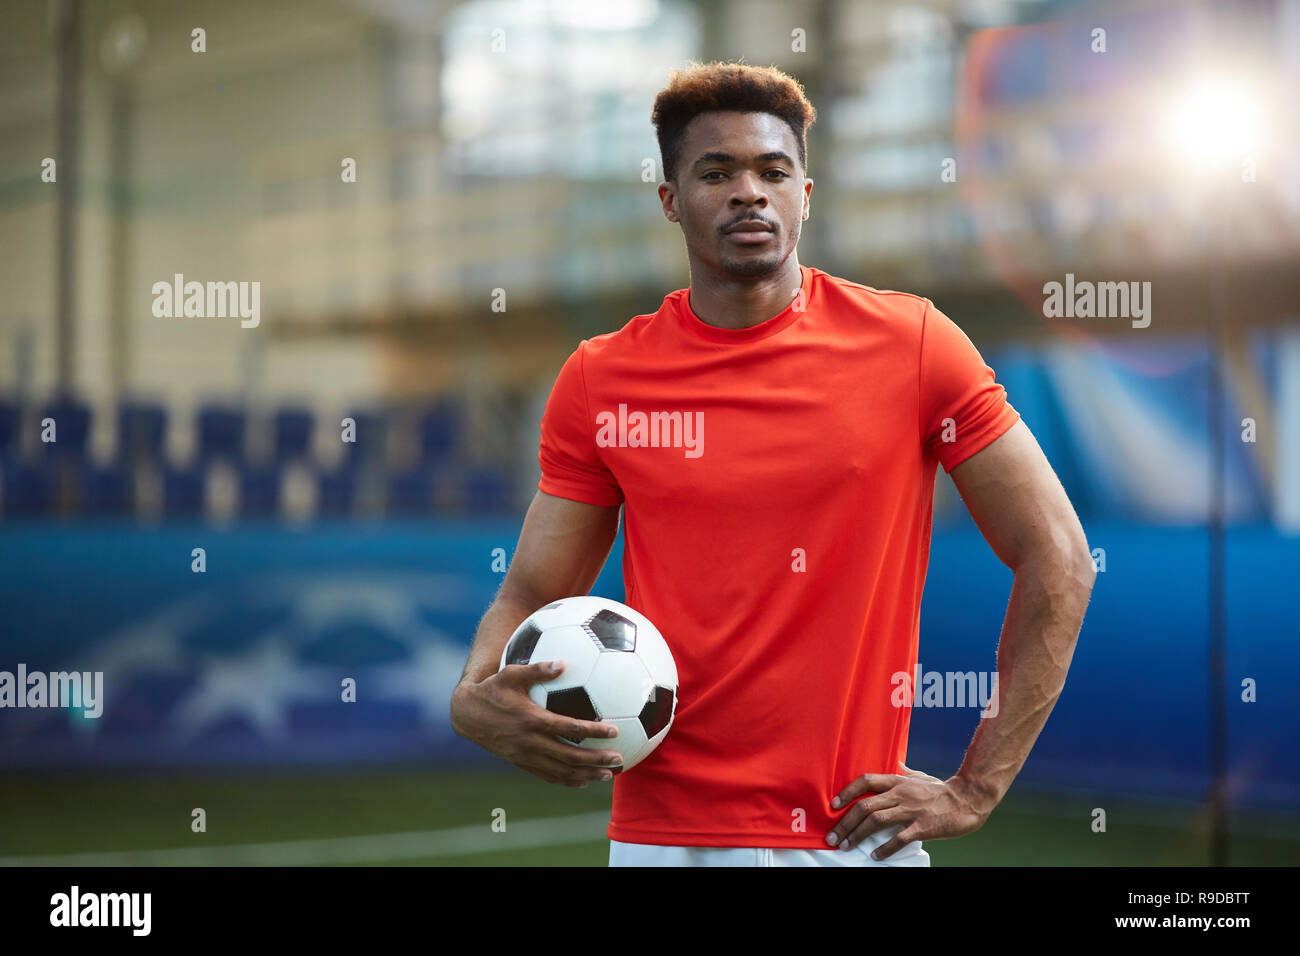 Footballer at stadium Stock Photo